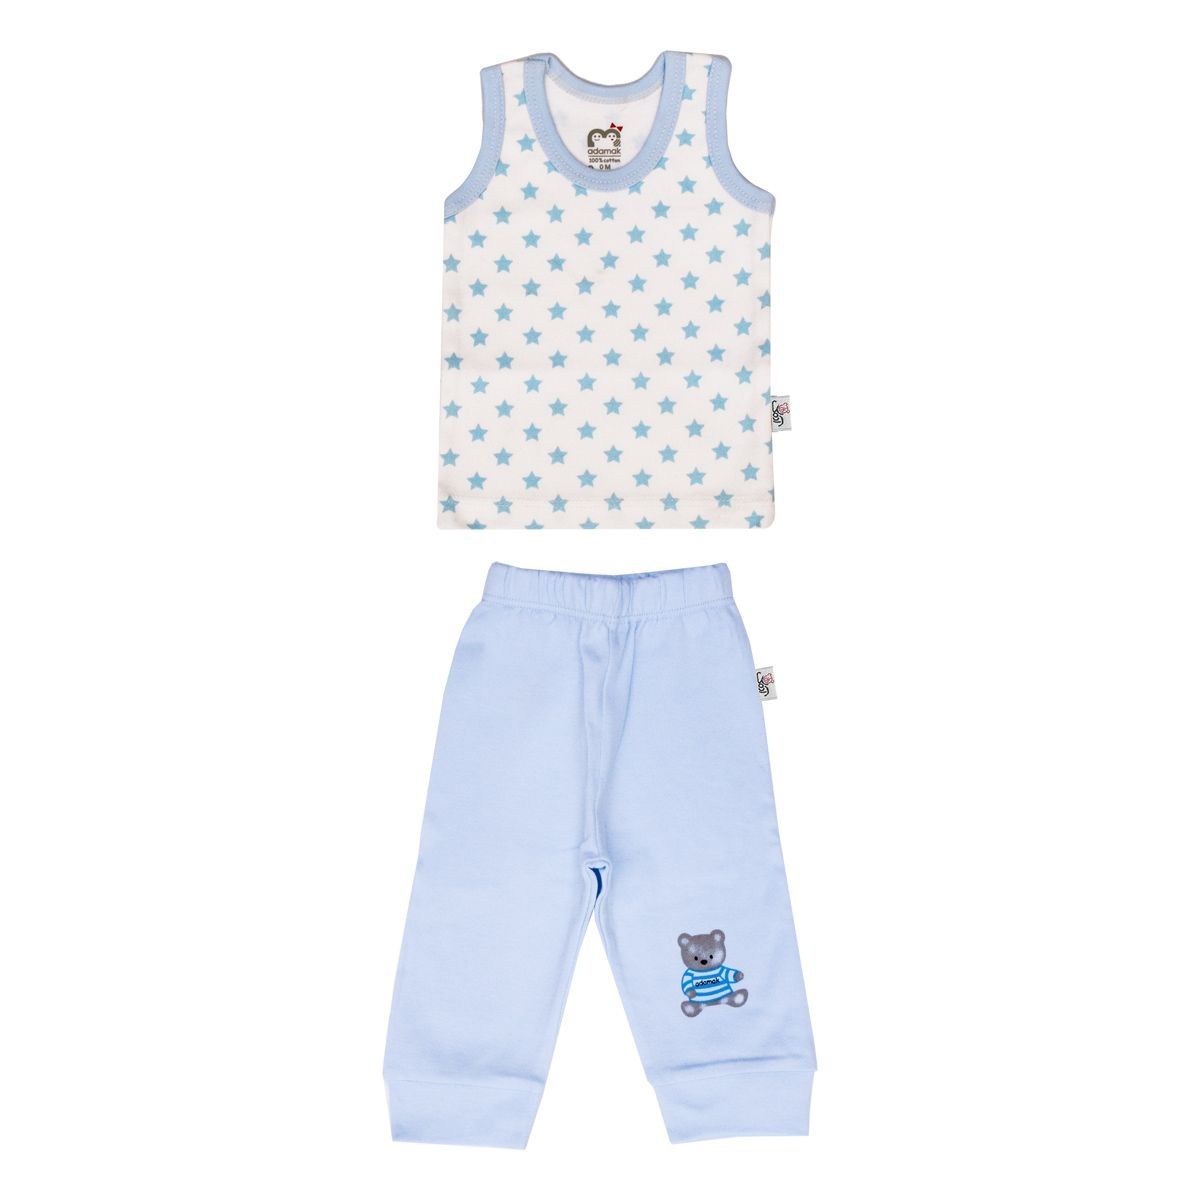 ست تاپ و شلوار نوزادی پسرانه آدمک طرح ستاره آبی کد 02 -  - 2